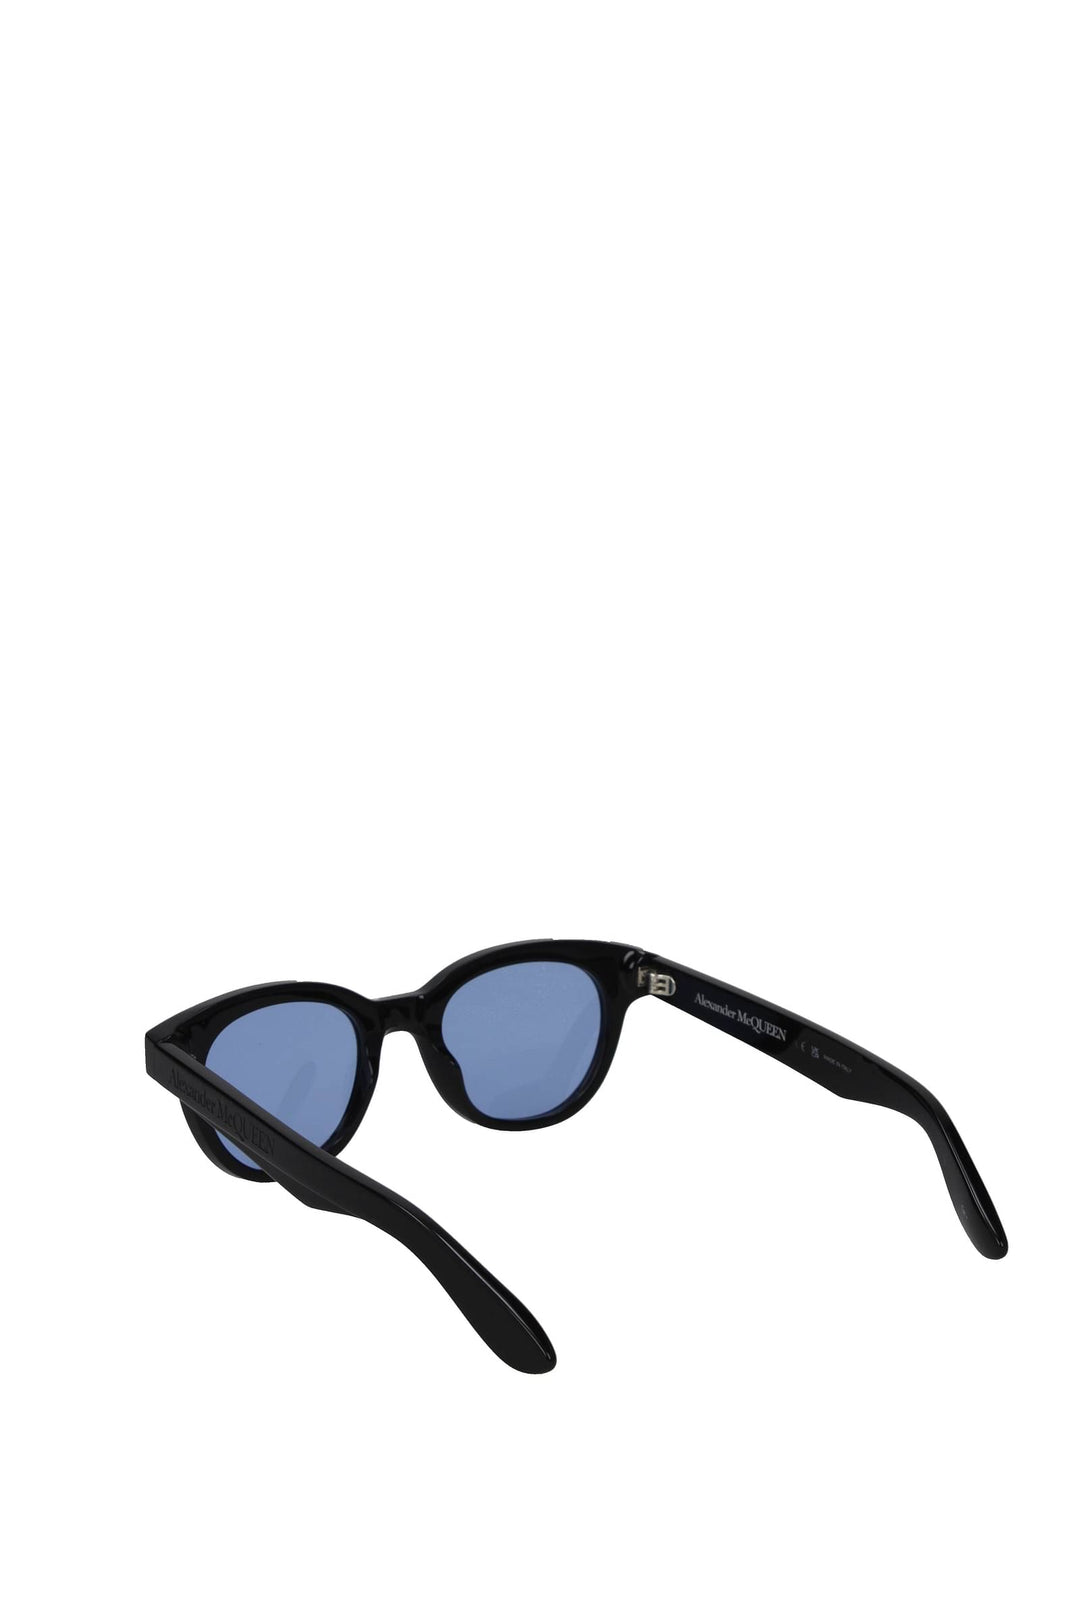 Occhiali Da Sole Acetato Nero Blu - Alexander McQueen - Uomo